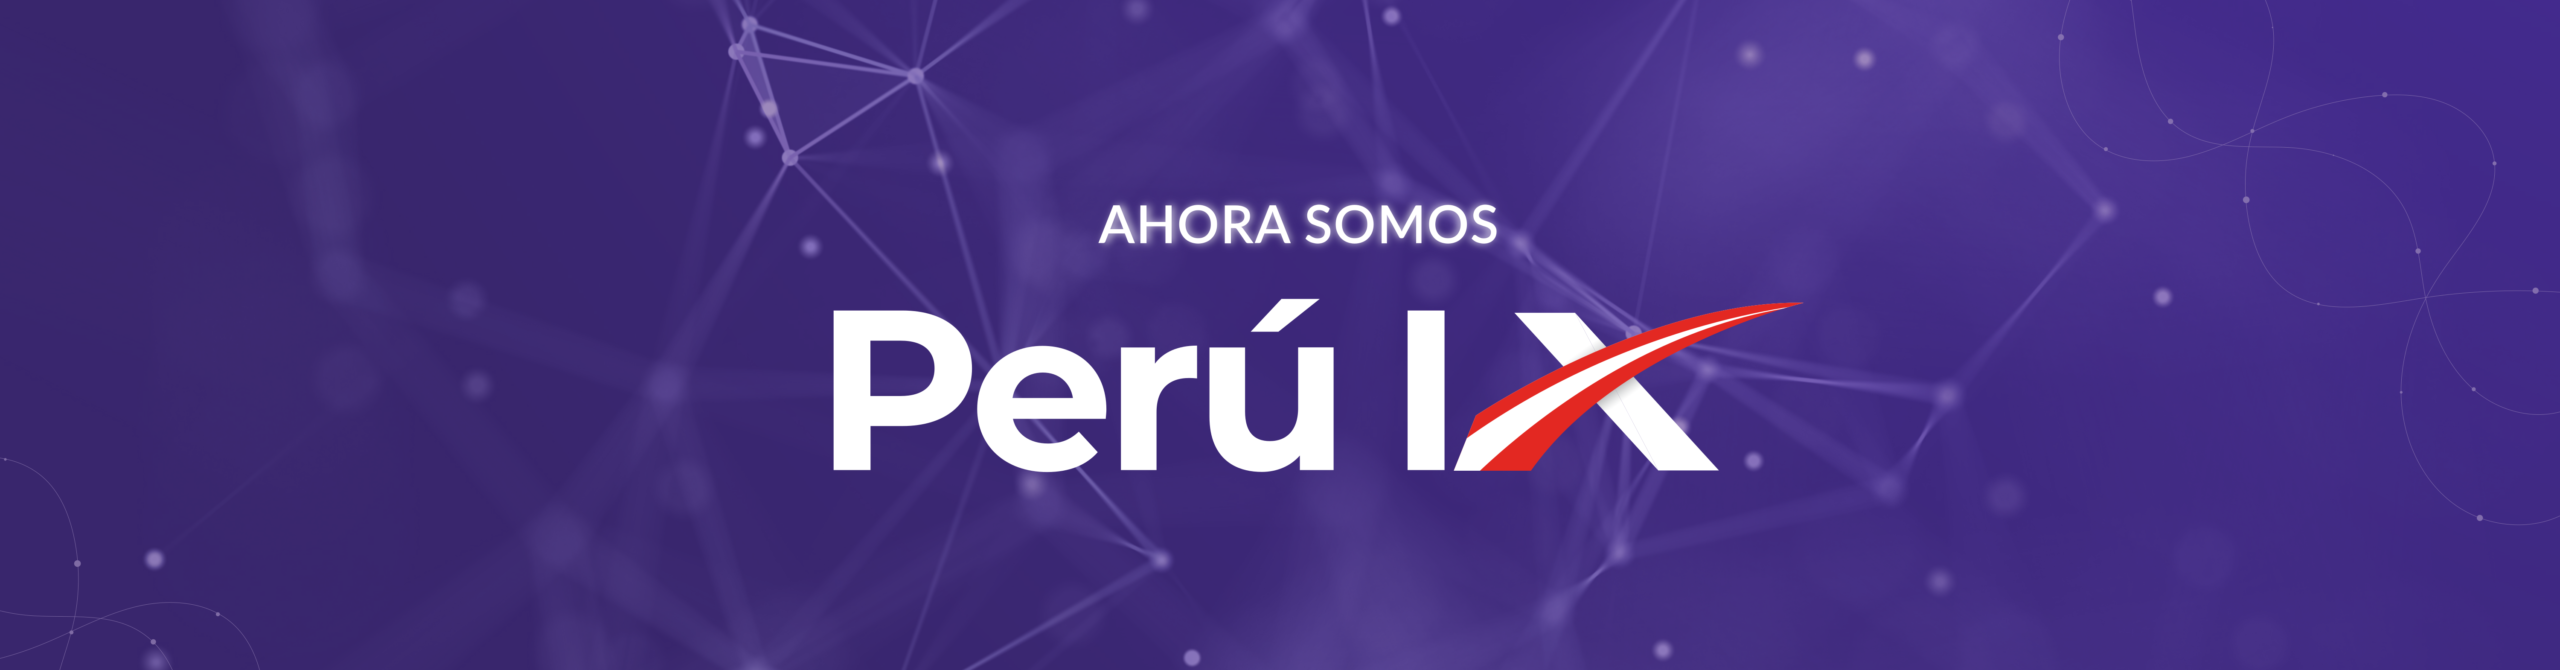 Ahora somos Perú IX